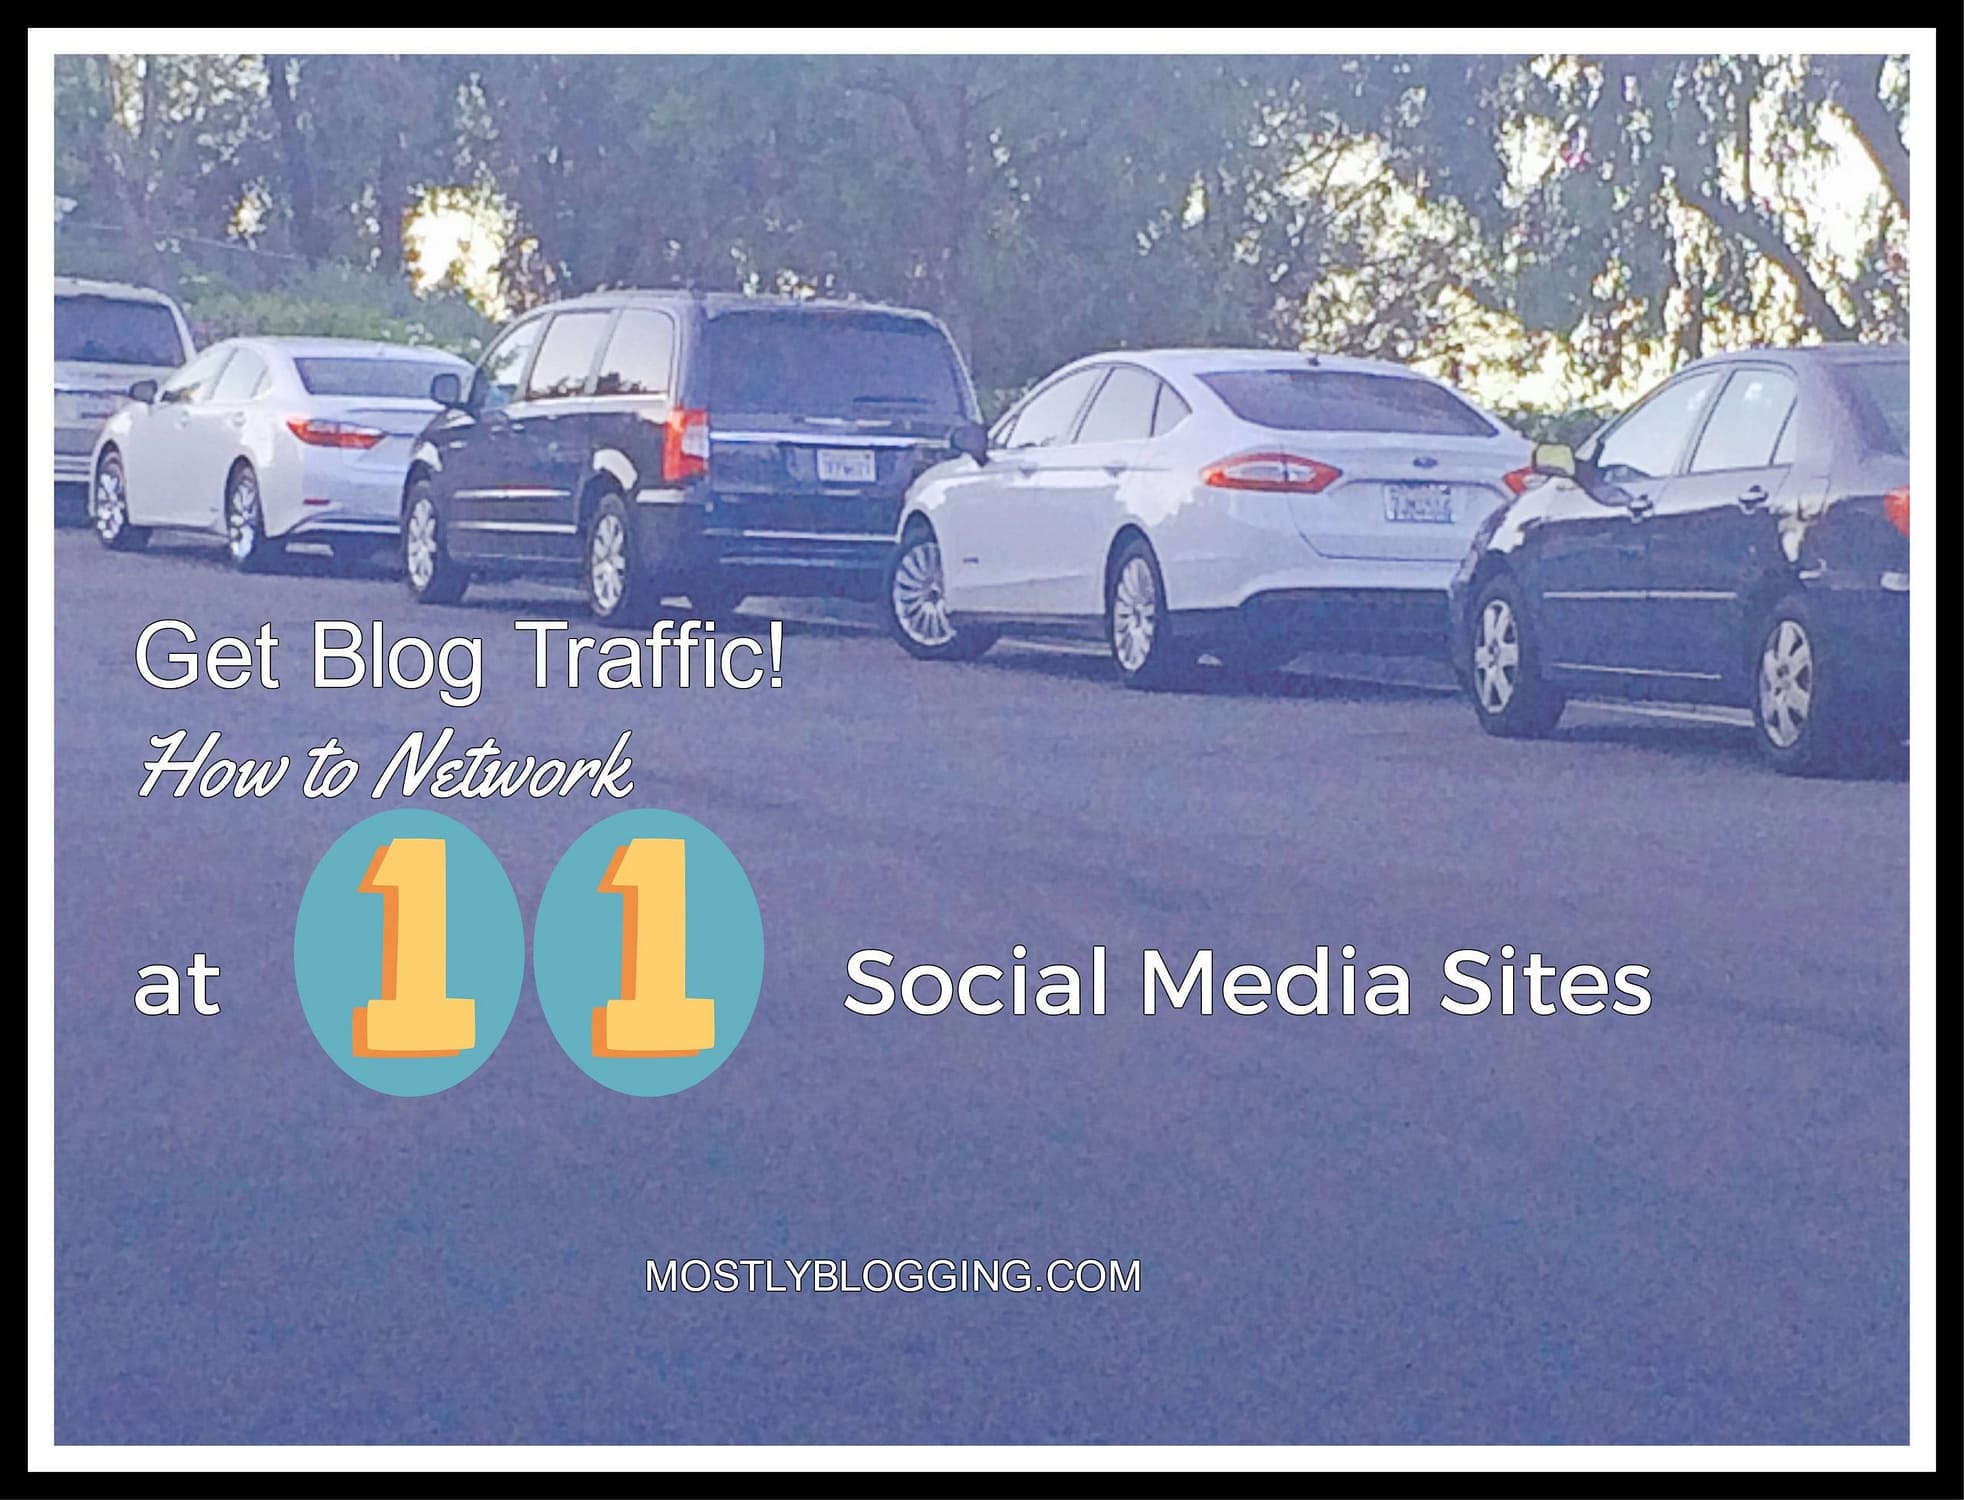 Get Blog Traffic at Social Media Sites